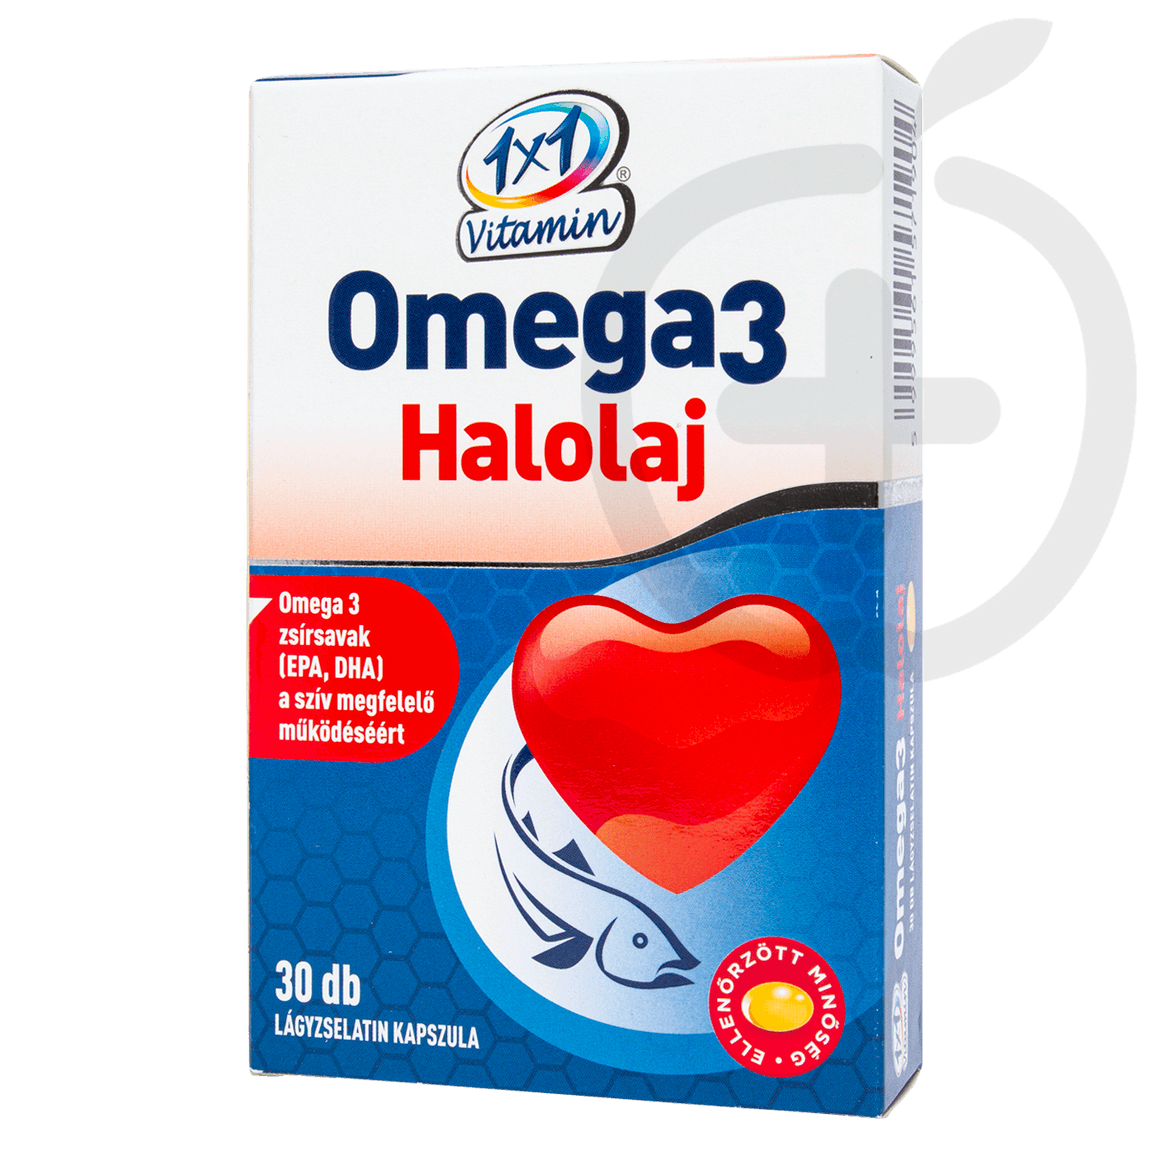 1x1 Vitamin Omega3 Halolaj étrend-kiegészítő lágyzselatin kapszula